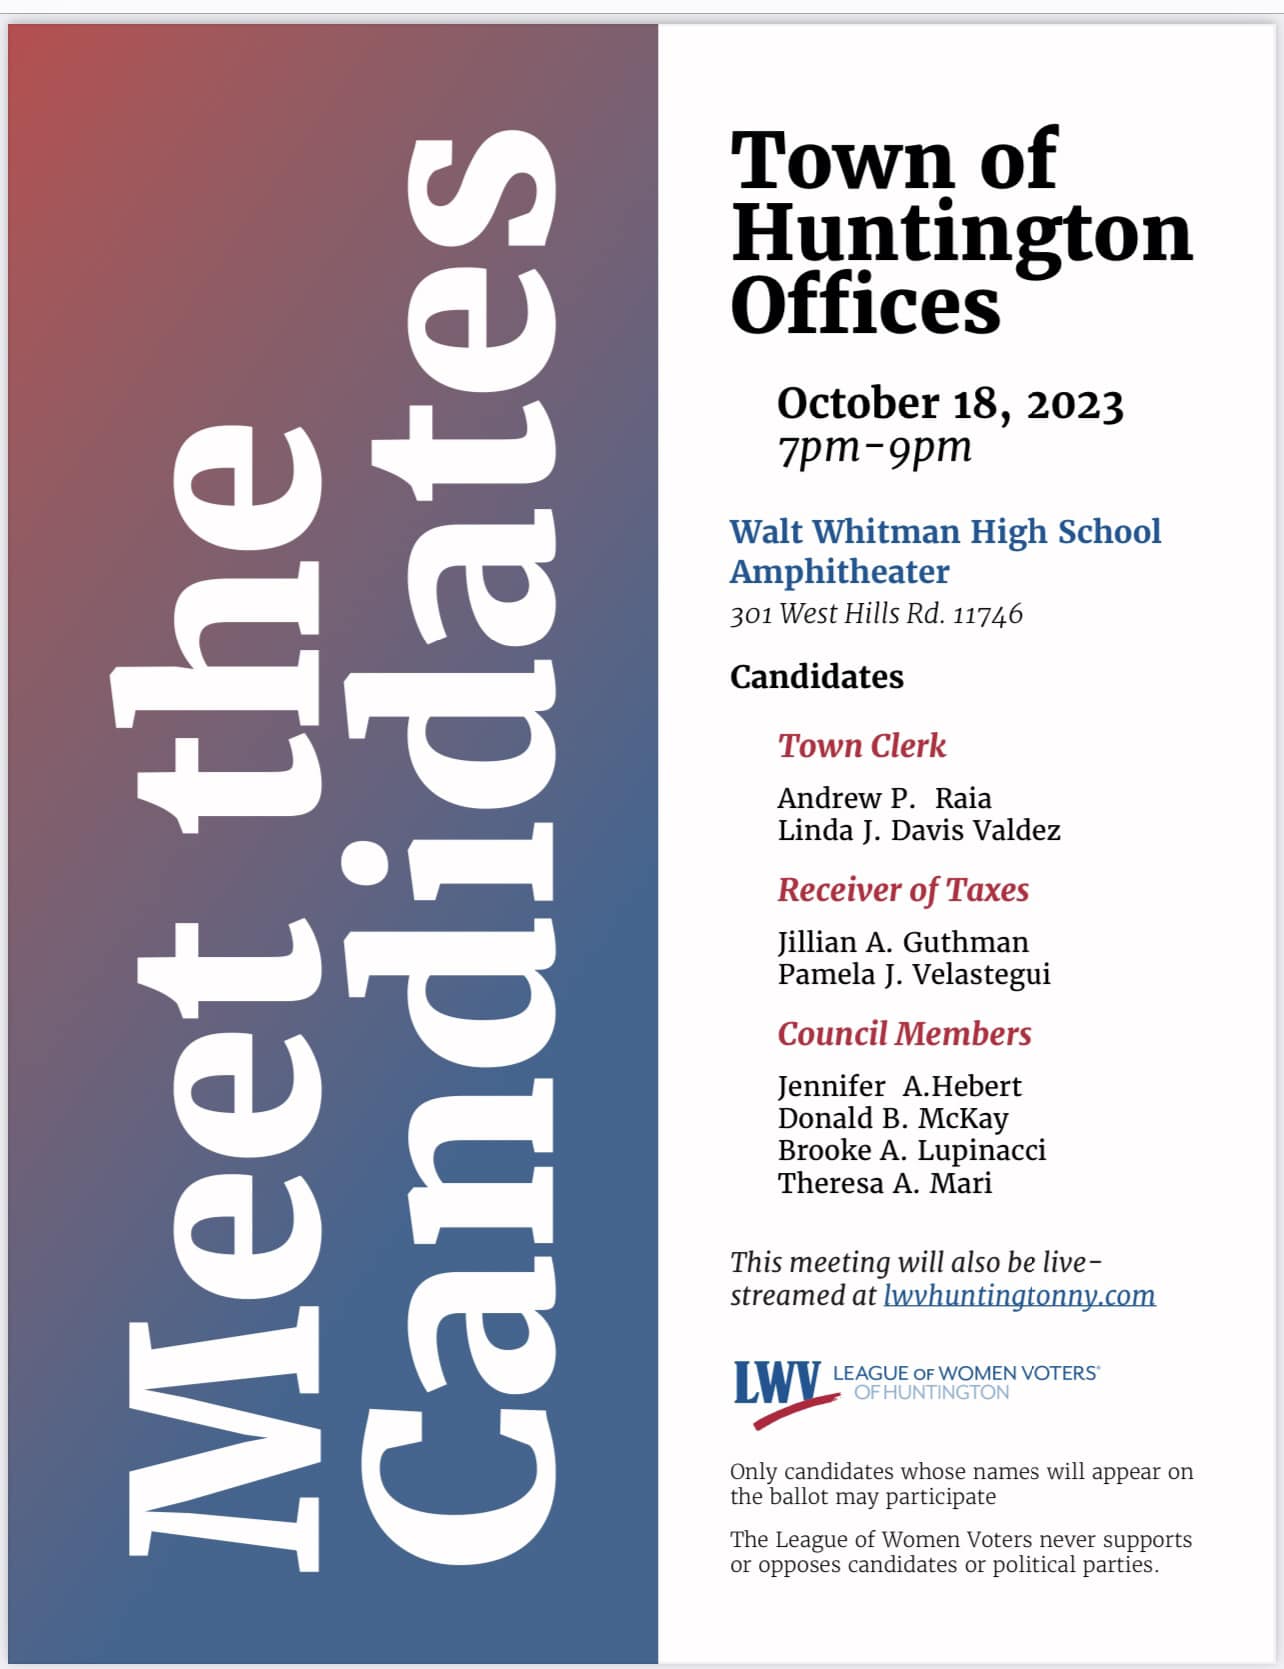 La Liga de Mujeres Votantes anuncia debates de candidatos en Huntington